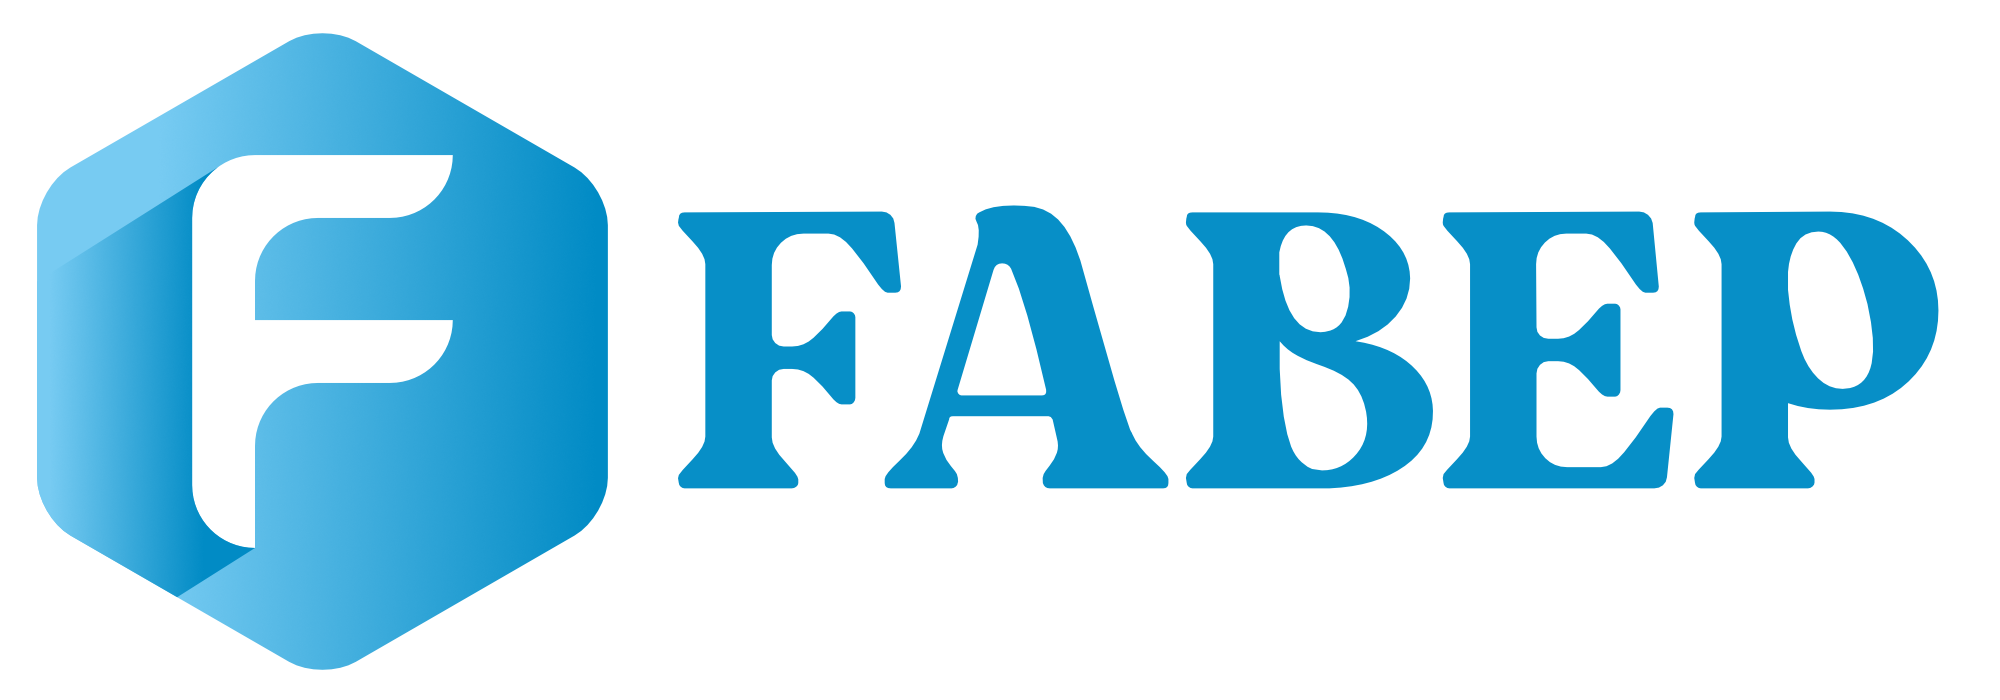 FABEP Member Database